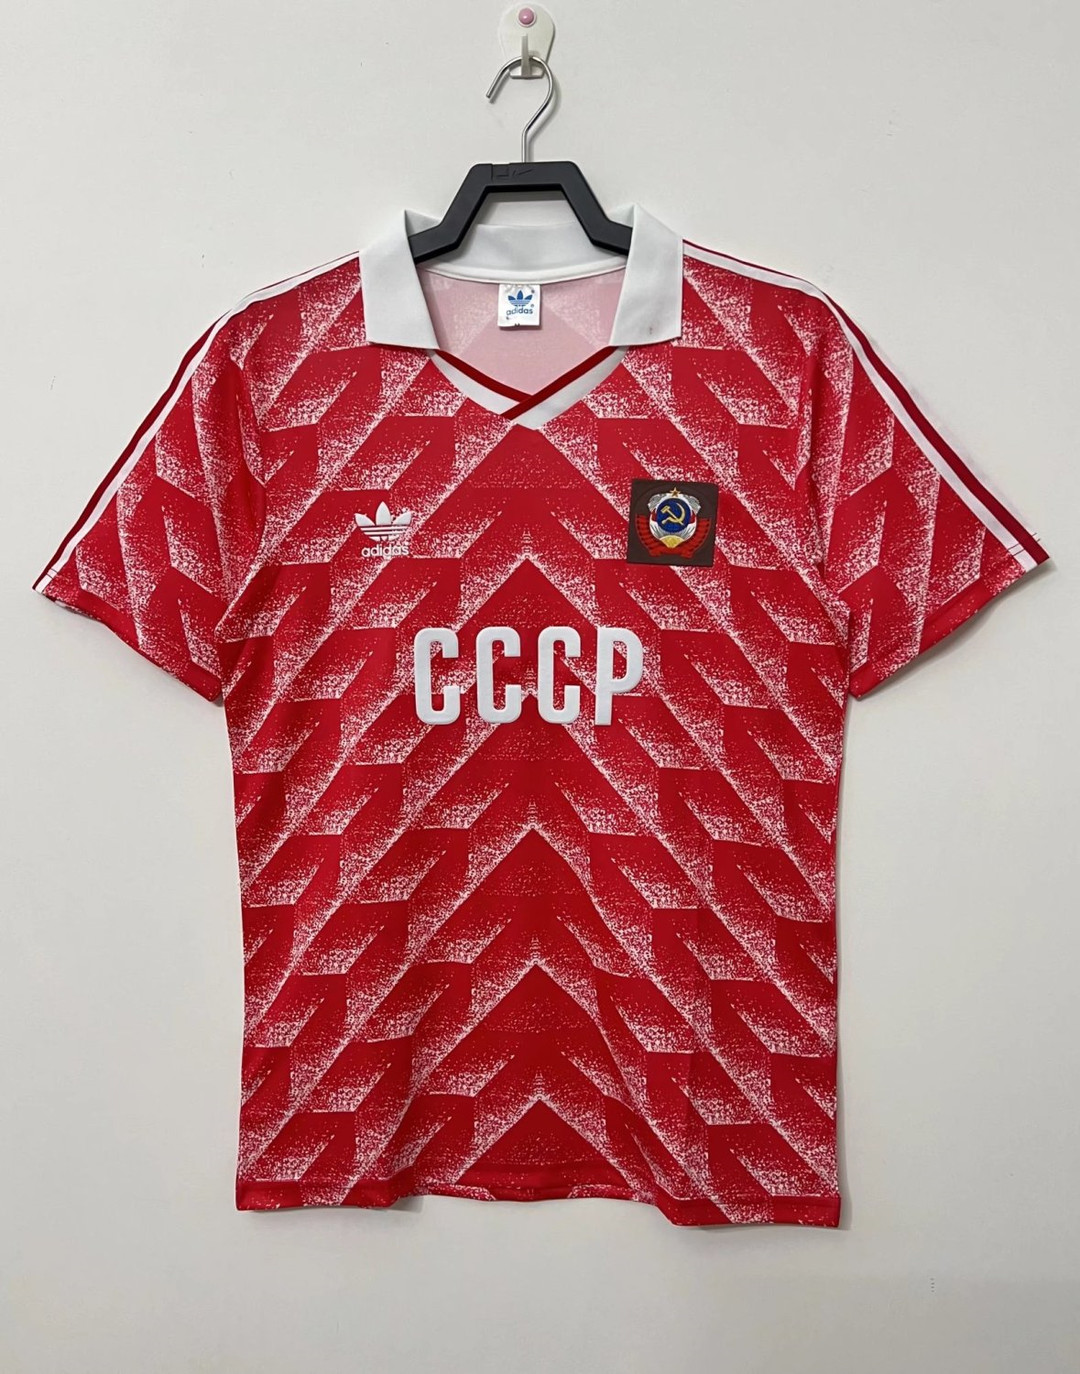 Soviet Union? CCCP Soccer Jersey Replica Retro Home Mens 1987/88